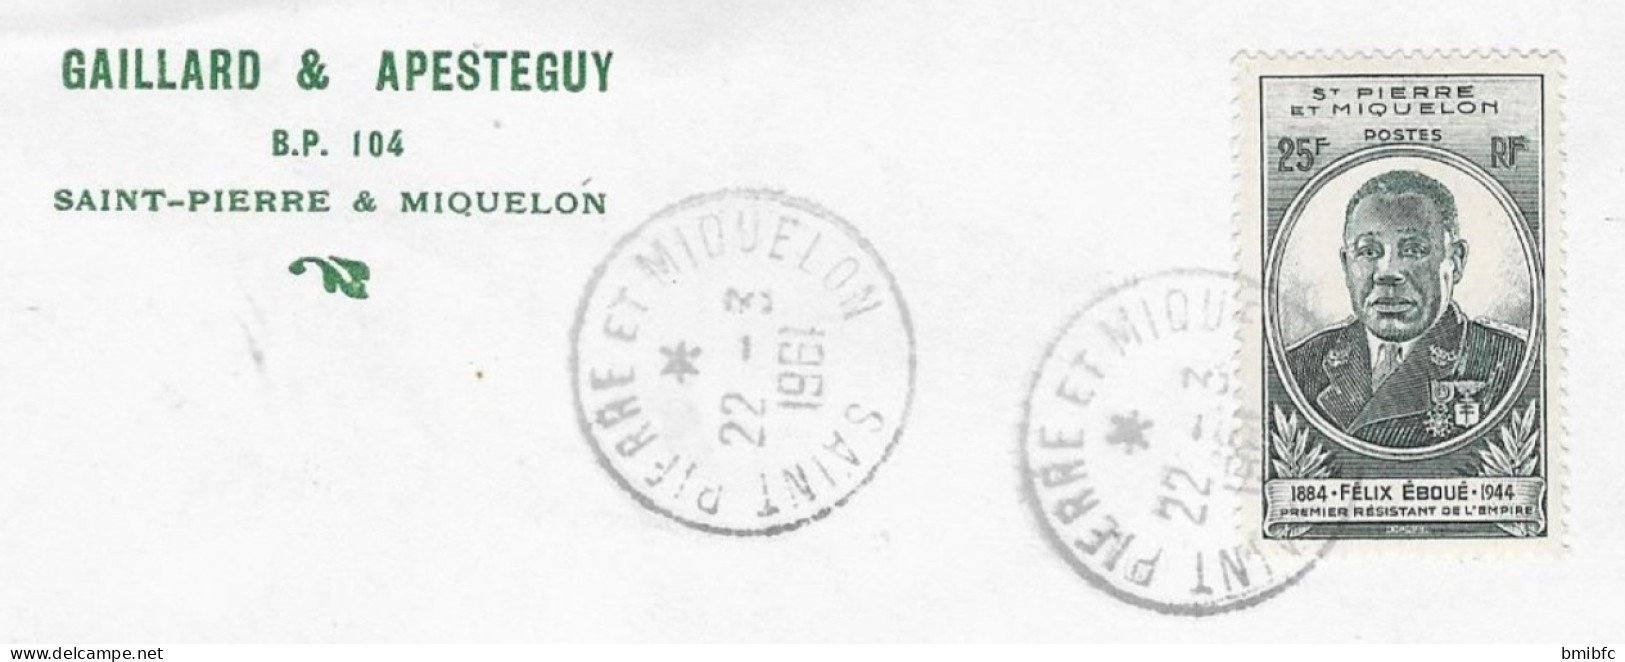 1961 Sur Lettre - GAILLARD&APESTEGUY BP 104 SAINT-PIERRE & MIQUELON - Briefe U. Dokumente